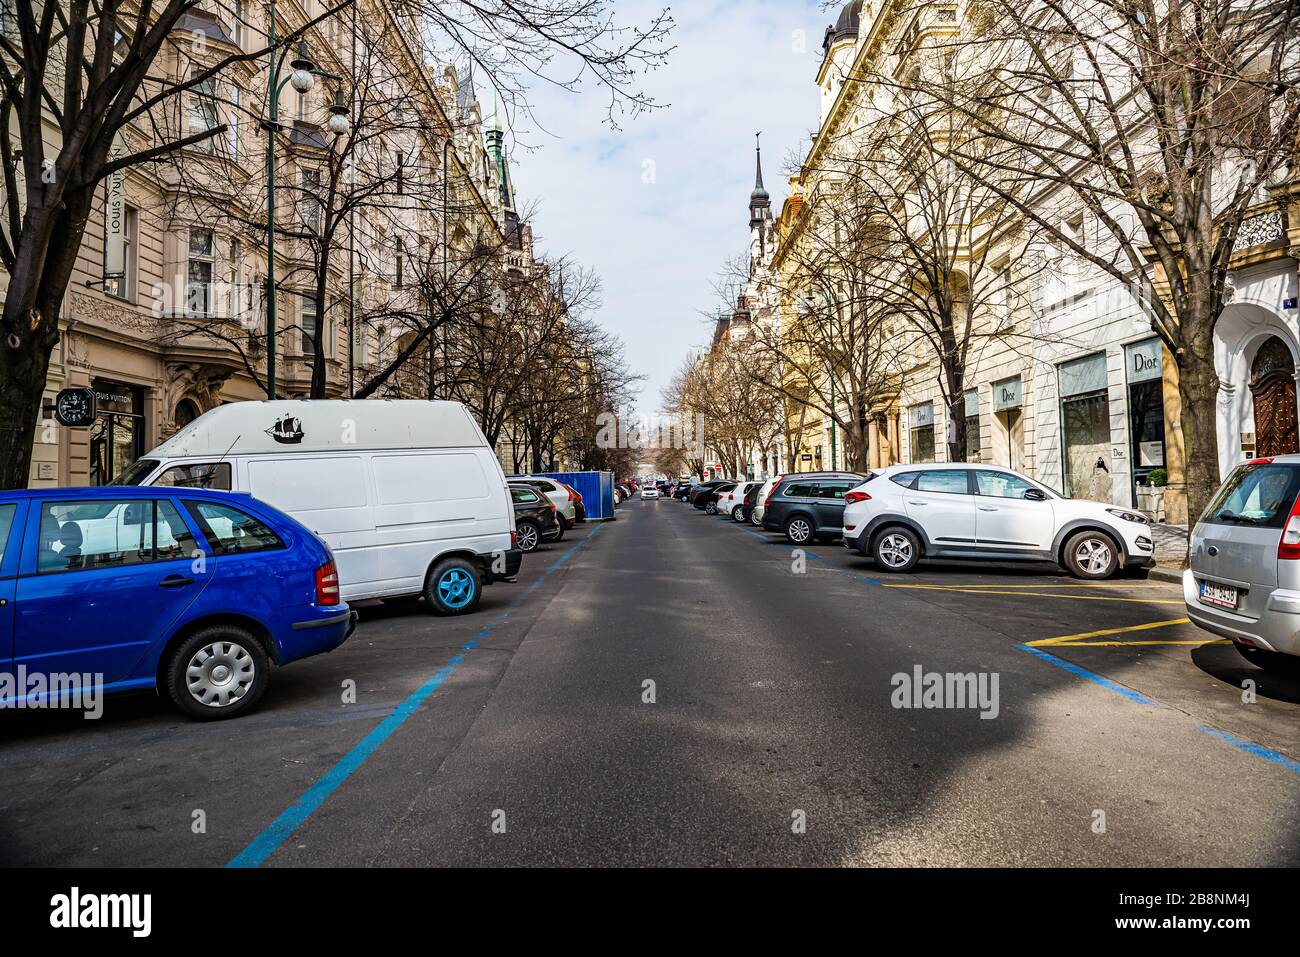 Prag, Tschechien - 19. März 2020. Die teuerste Straße Parizska mit exklusiven Geschäften ohne Menschen während der Coronavirus-Krise und Reiseverbot Stockfoto